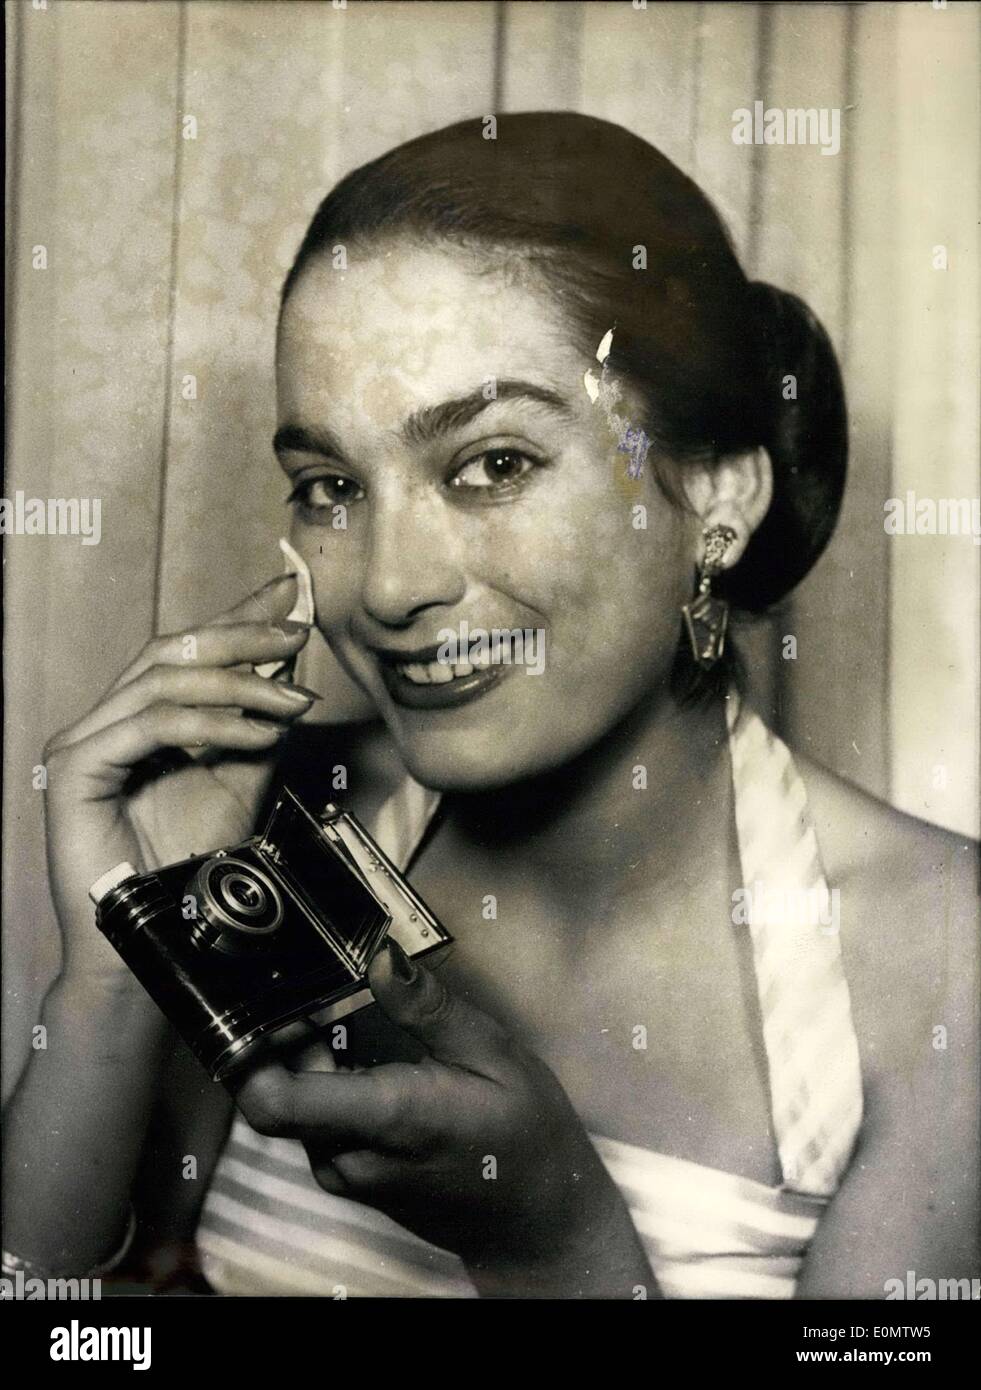 Sept. 09, 1956 - ein Powderbox mit einem Bultin-Kamera.: ist eine Anzeige auf Frankfurt Herbst fair. die Ministure Kamera mit Spezialfolie geladen werden kann, es funktioniert auf dem Box-System. Mehr ist eine Lipstikc die Wunder-Box befestigt. Stockfoto